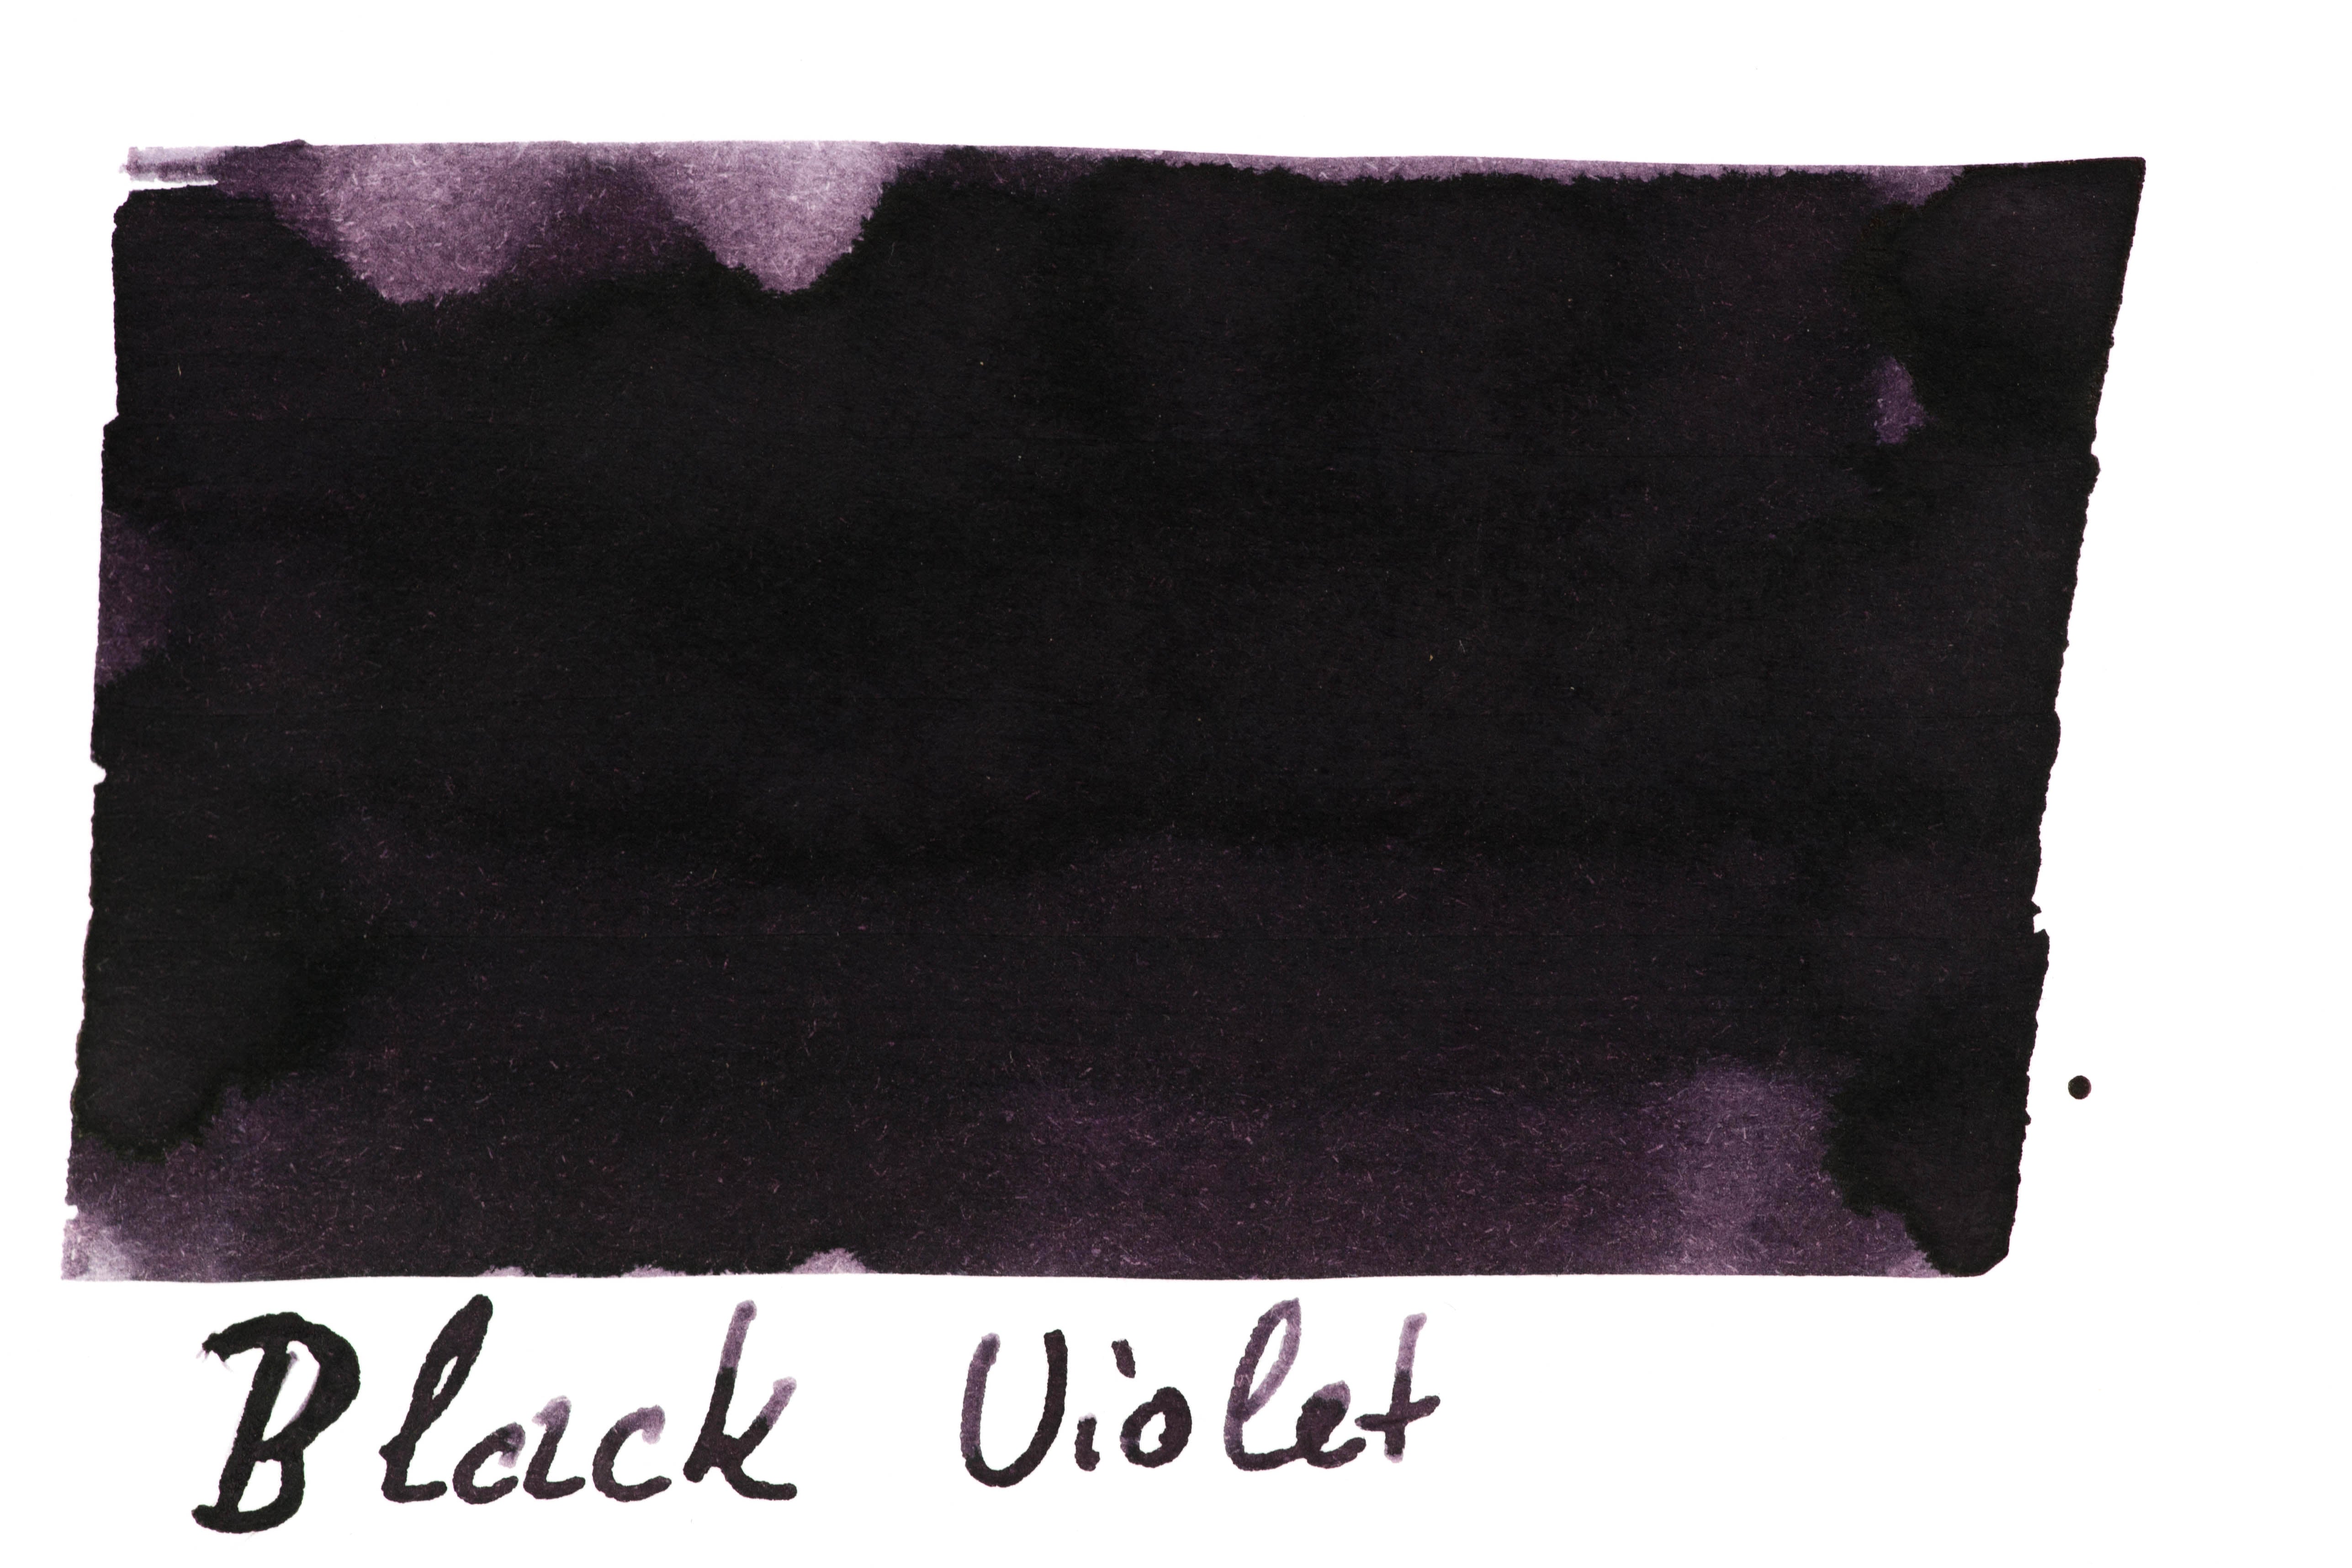 Robert Oster - Black Violet